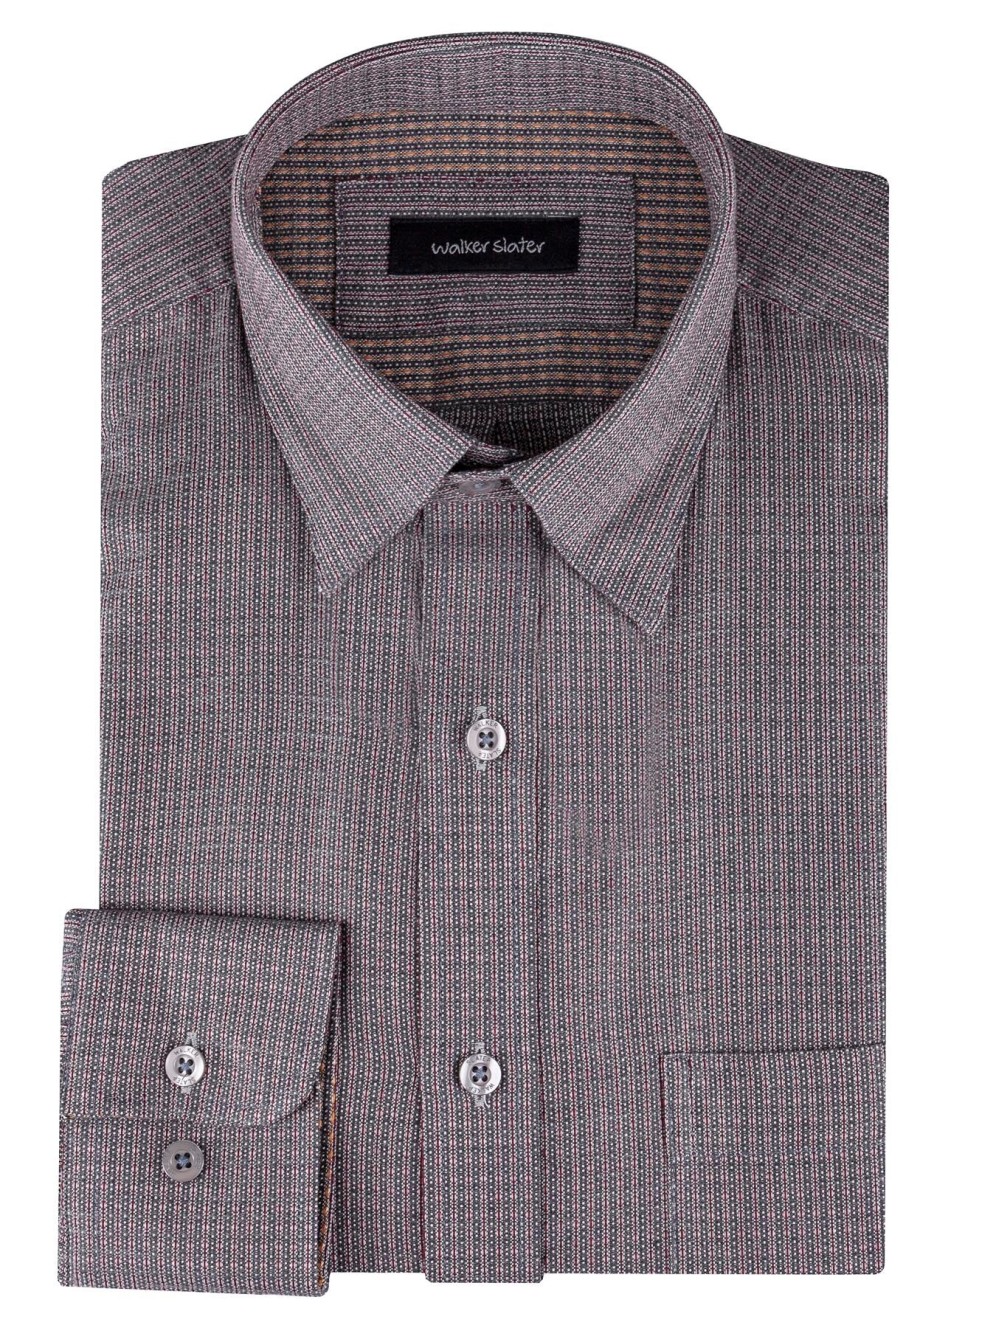 Wexford Shirt | Burgundy Stripe Cotton